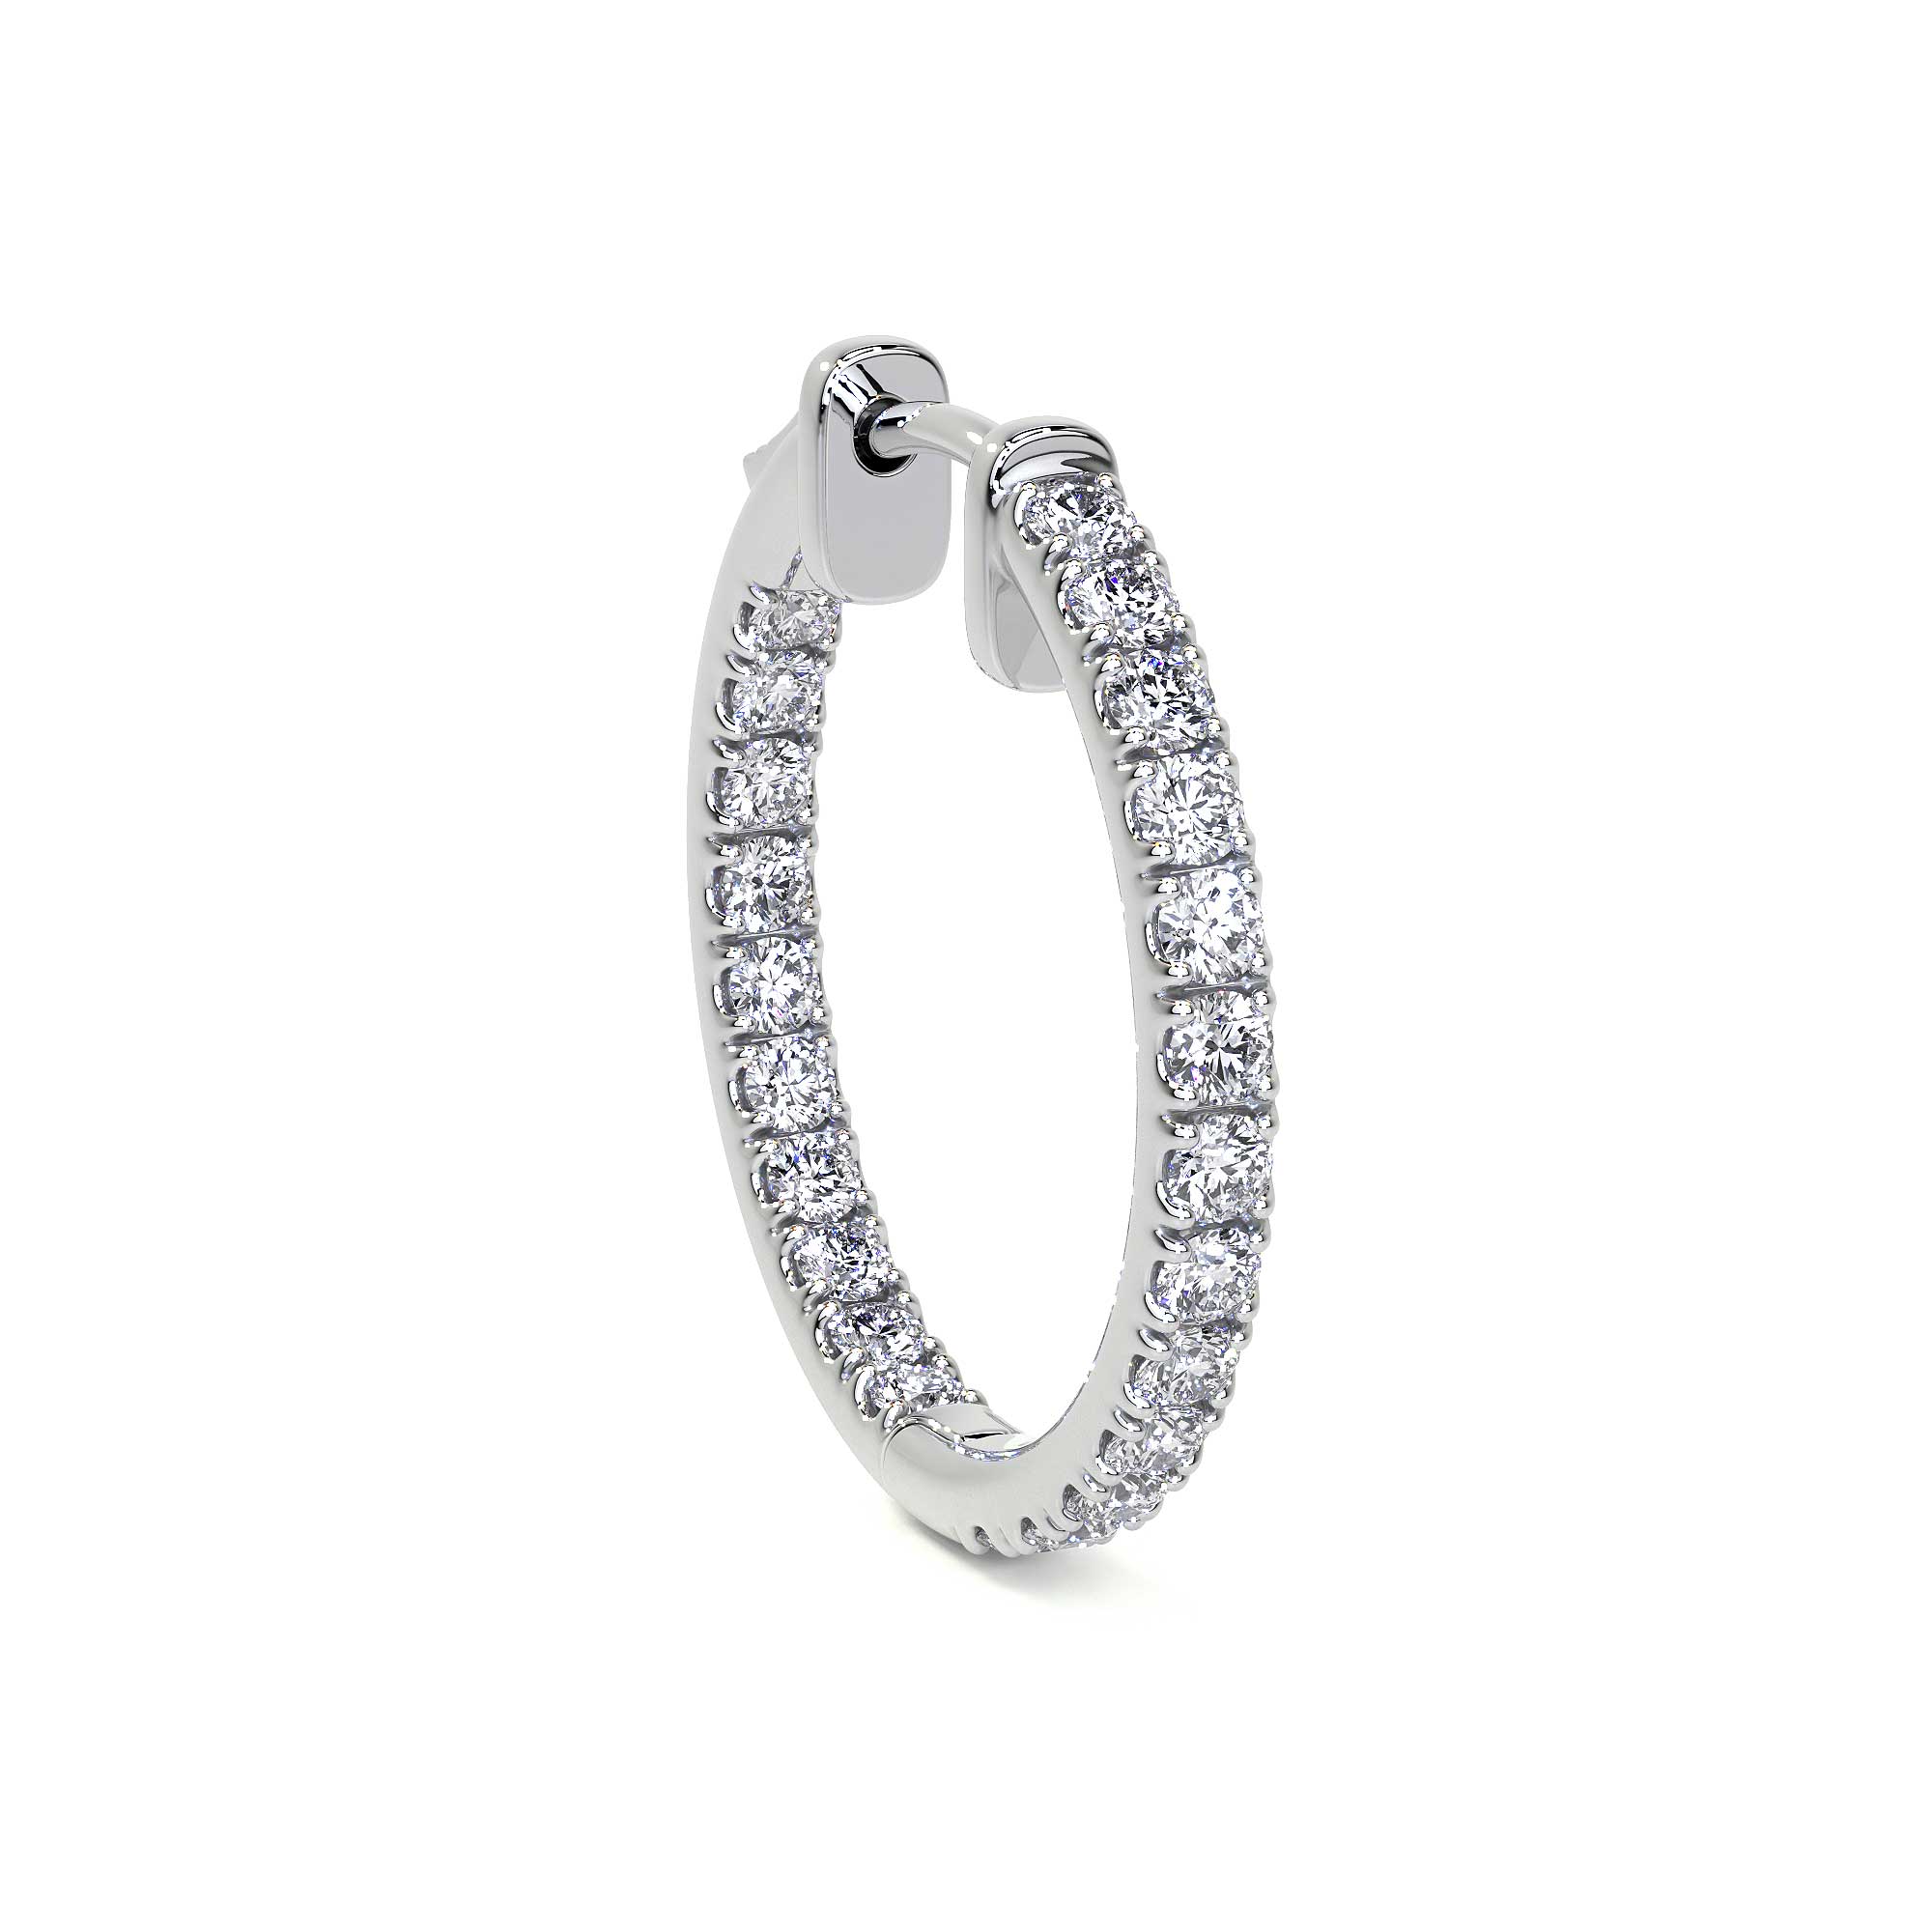 Diamond Hoop Earrings, Medium - Earrings - Leviev Diamonds